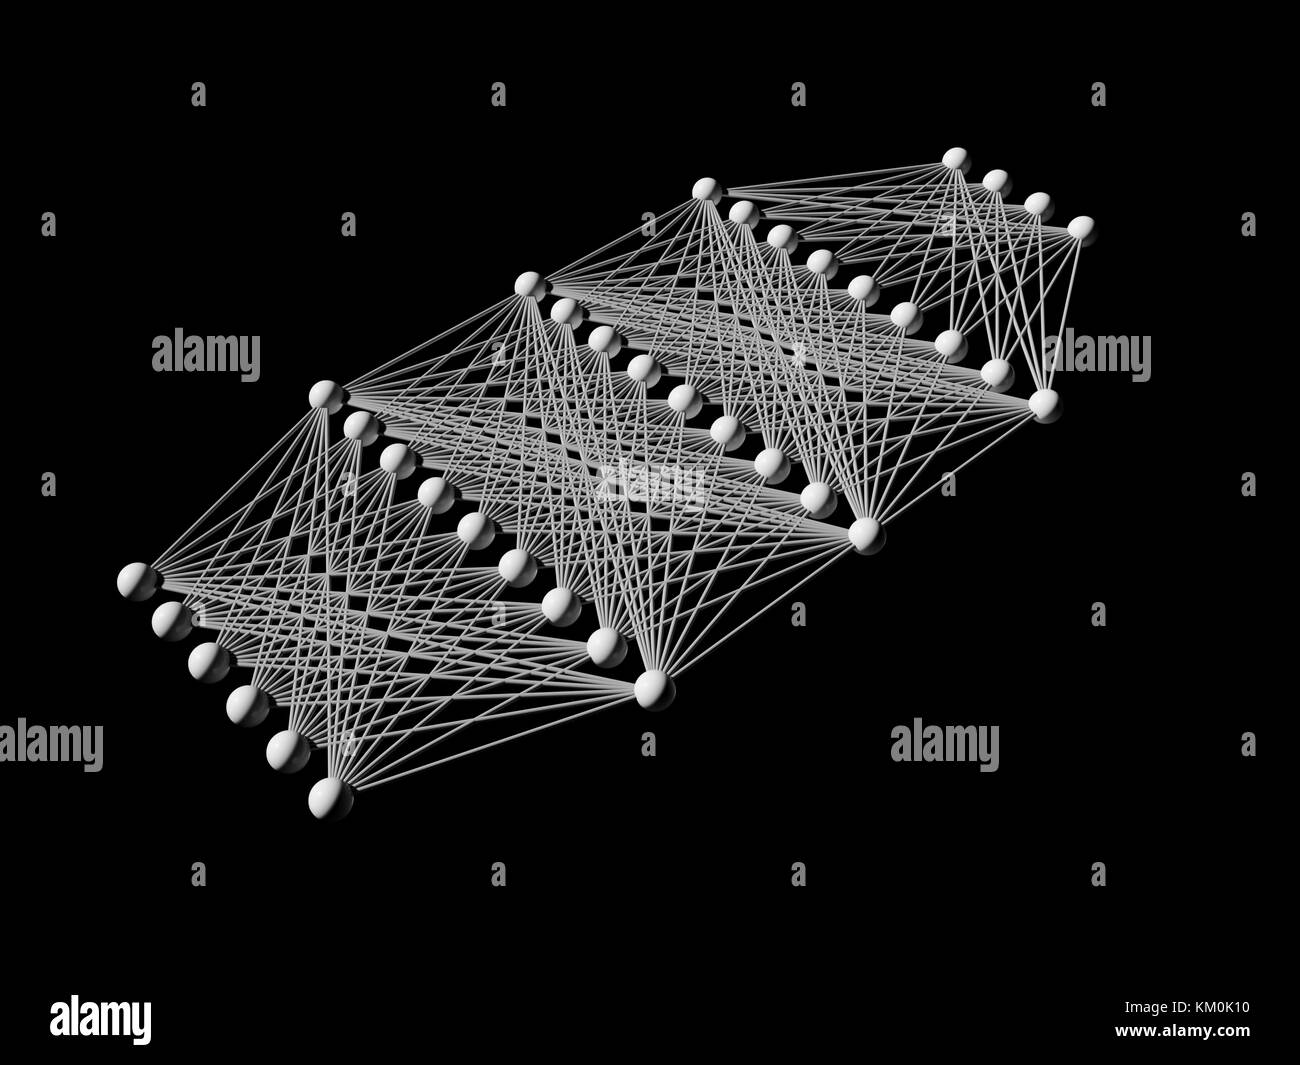 Künstliche tiefe neuronales Netz, schematisches Modell auf schwarz, 3D-Render isoliert Stockfoto